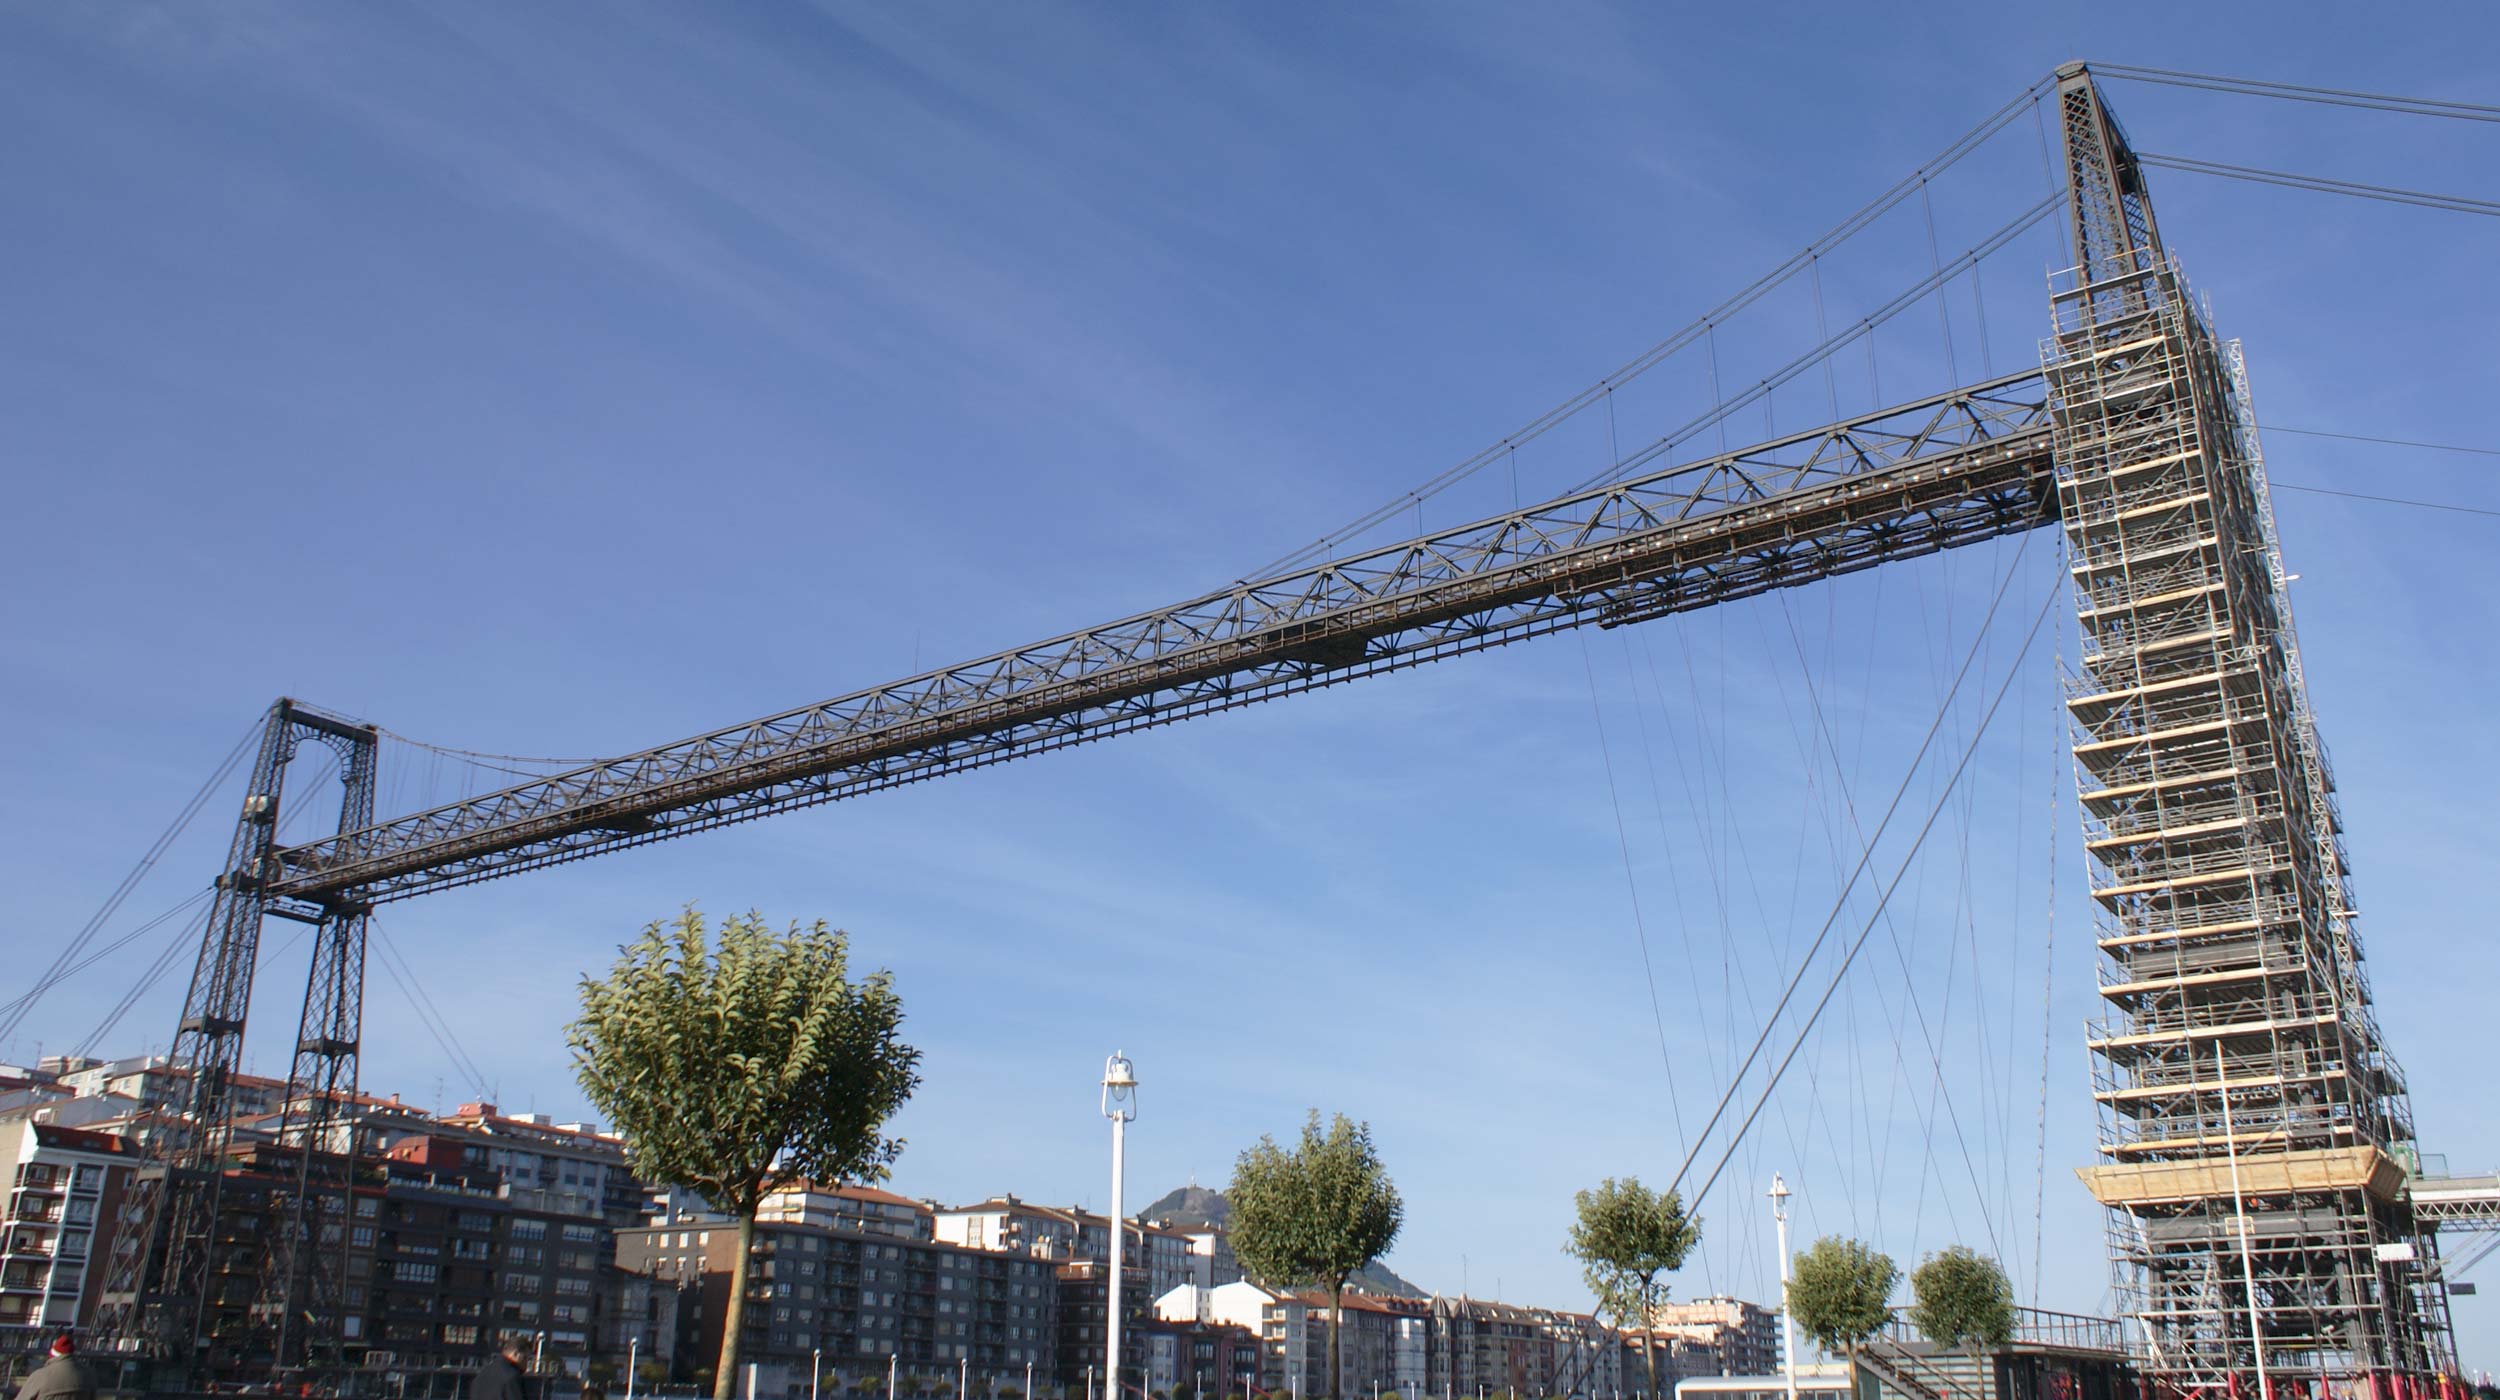 Dopo essere stato dichiarato Patrimonio dell'Umanità dall'Unesco nel 2006, il ponte Vizcaya è il simbolo della rivoluzione industriale avvenuta alla fine del diciannovesimo secolo.